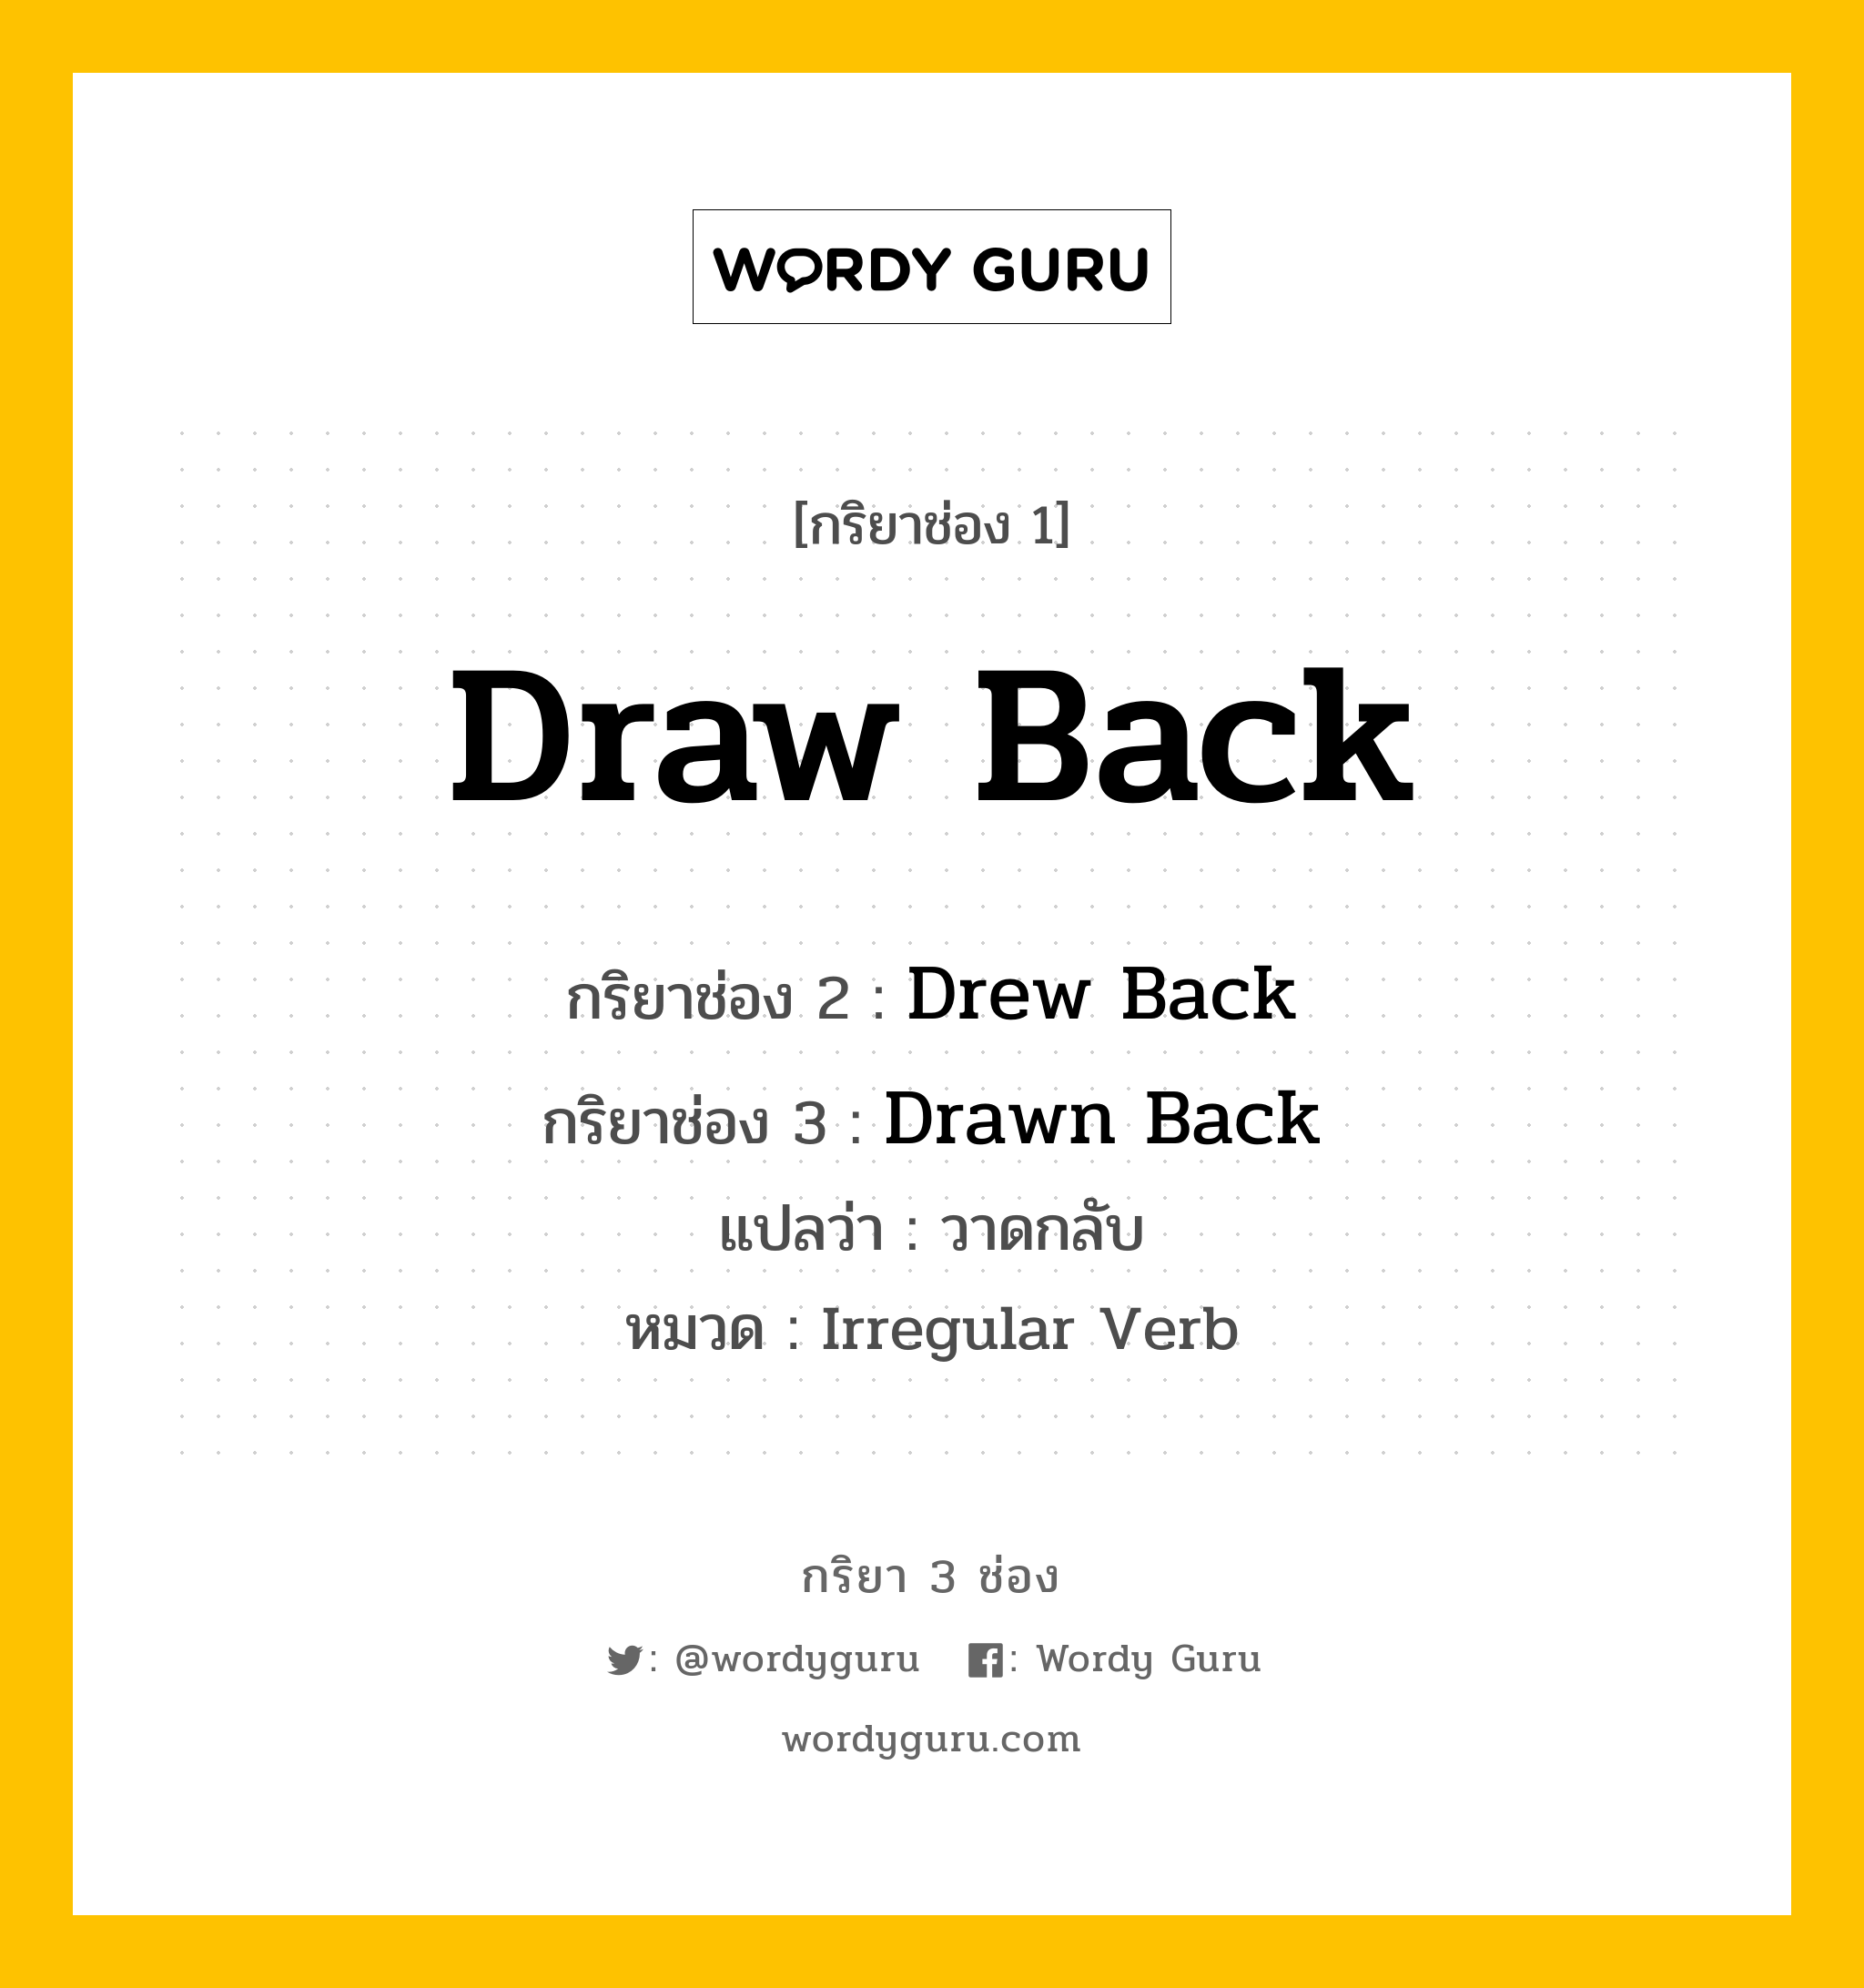 กริยา 3 ช่อง: Draw Back ช่อง 2 Draw Back ช่อง 3 คืออะไร, กริยาช่อง 1 Draw Back กริยาช่อง 2 Drew Back กริยาช่อง 3 Drawn Back แปลว่า วาดกลับ หมวด Irregular Verb หมวด Irregular Verb